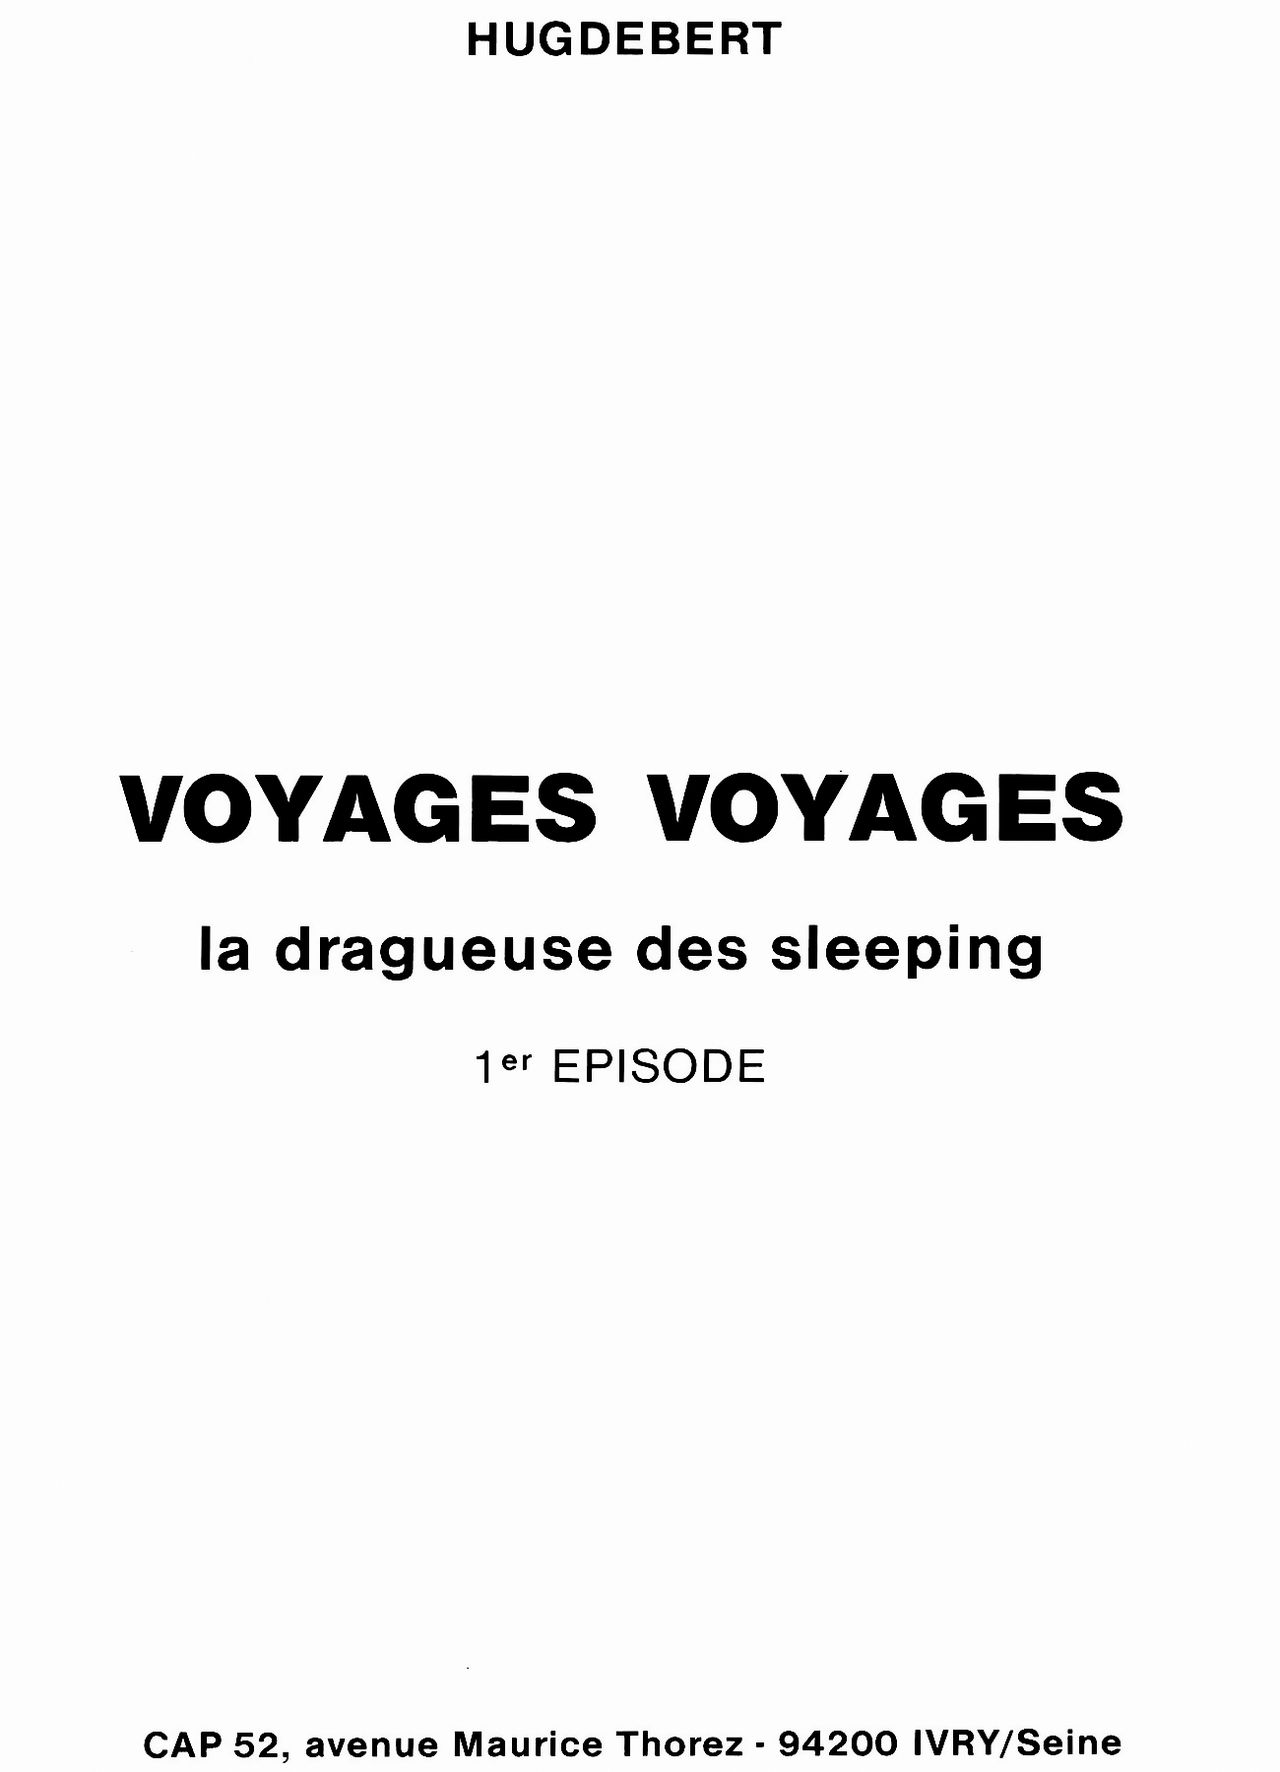 Voyages-voyages 1. La Dragueuse des sleeping numero d'image 1